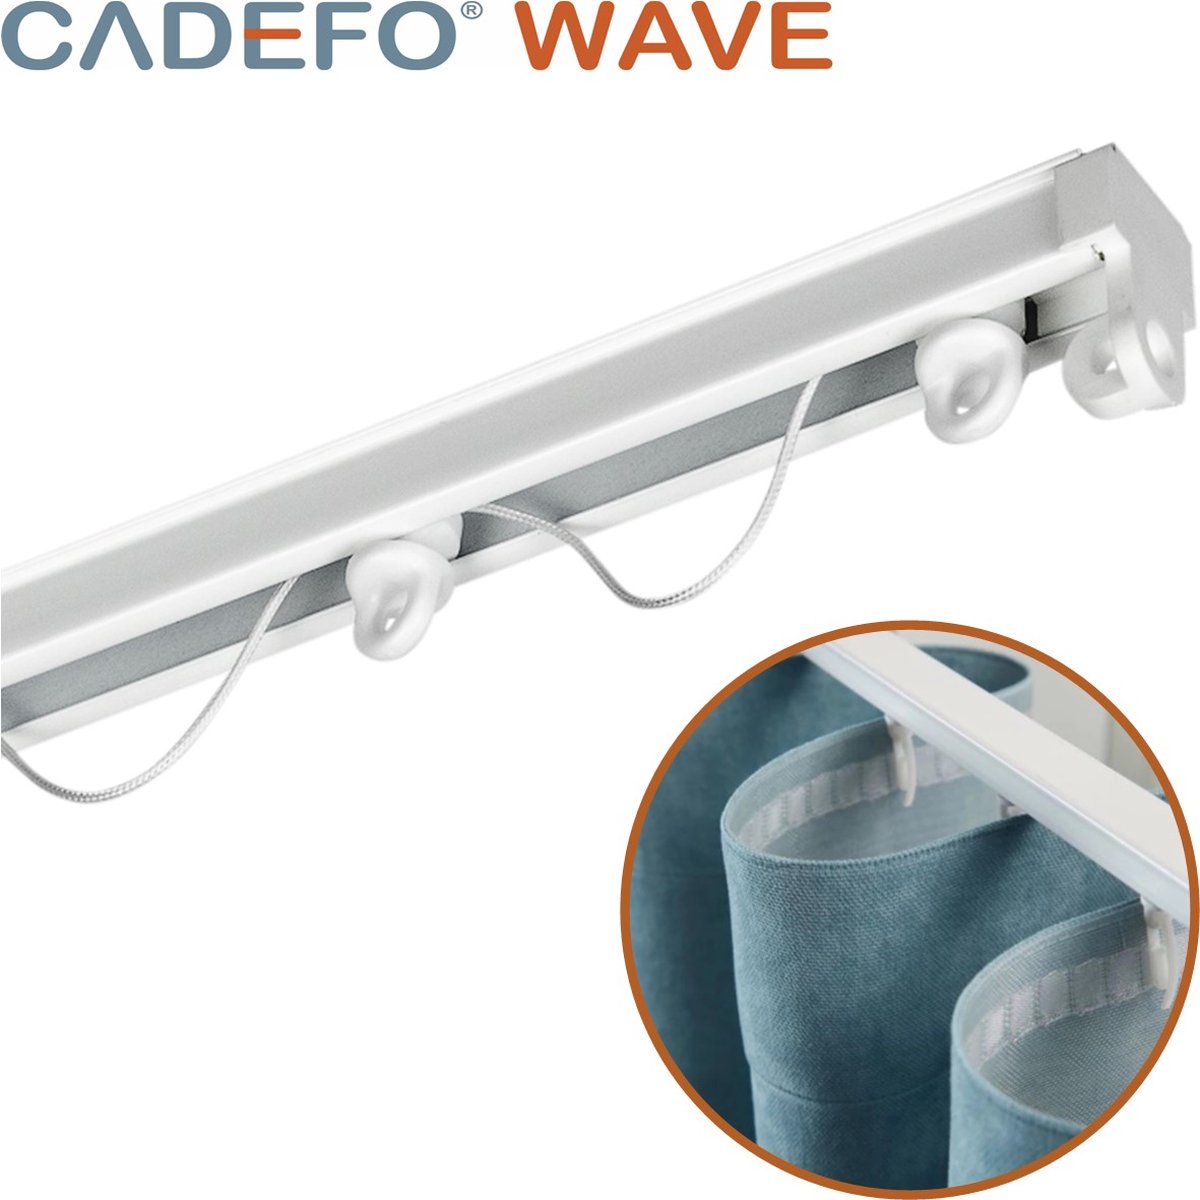 CADEFO WAVE (501 - 550 cm) Gordijnrails - Compleet op maat! - UIT 1 STUK - Leverbaar tot 6 meter - Plafondbevestiging - Lengte 512 cm